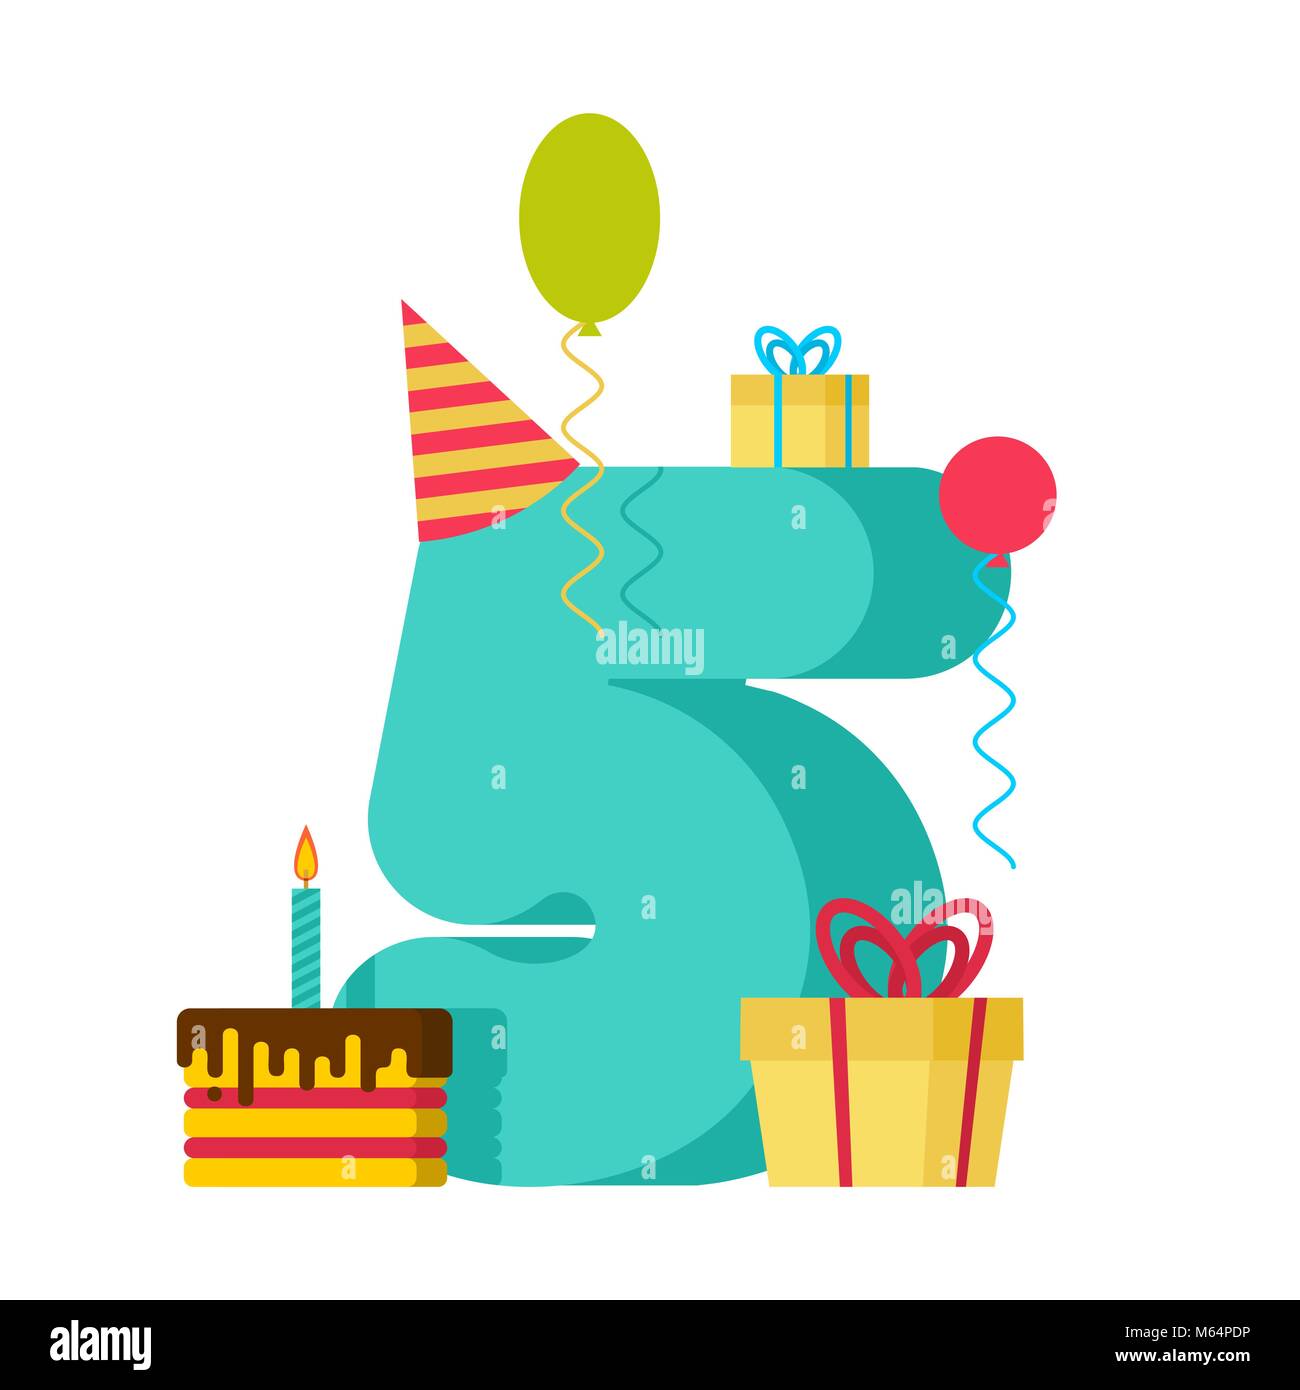 Celebrando un aniversario de cinco años. cumpleaños número 5 globo negro.  cartel de cumpleaños